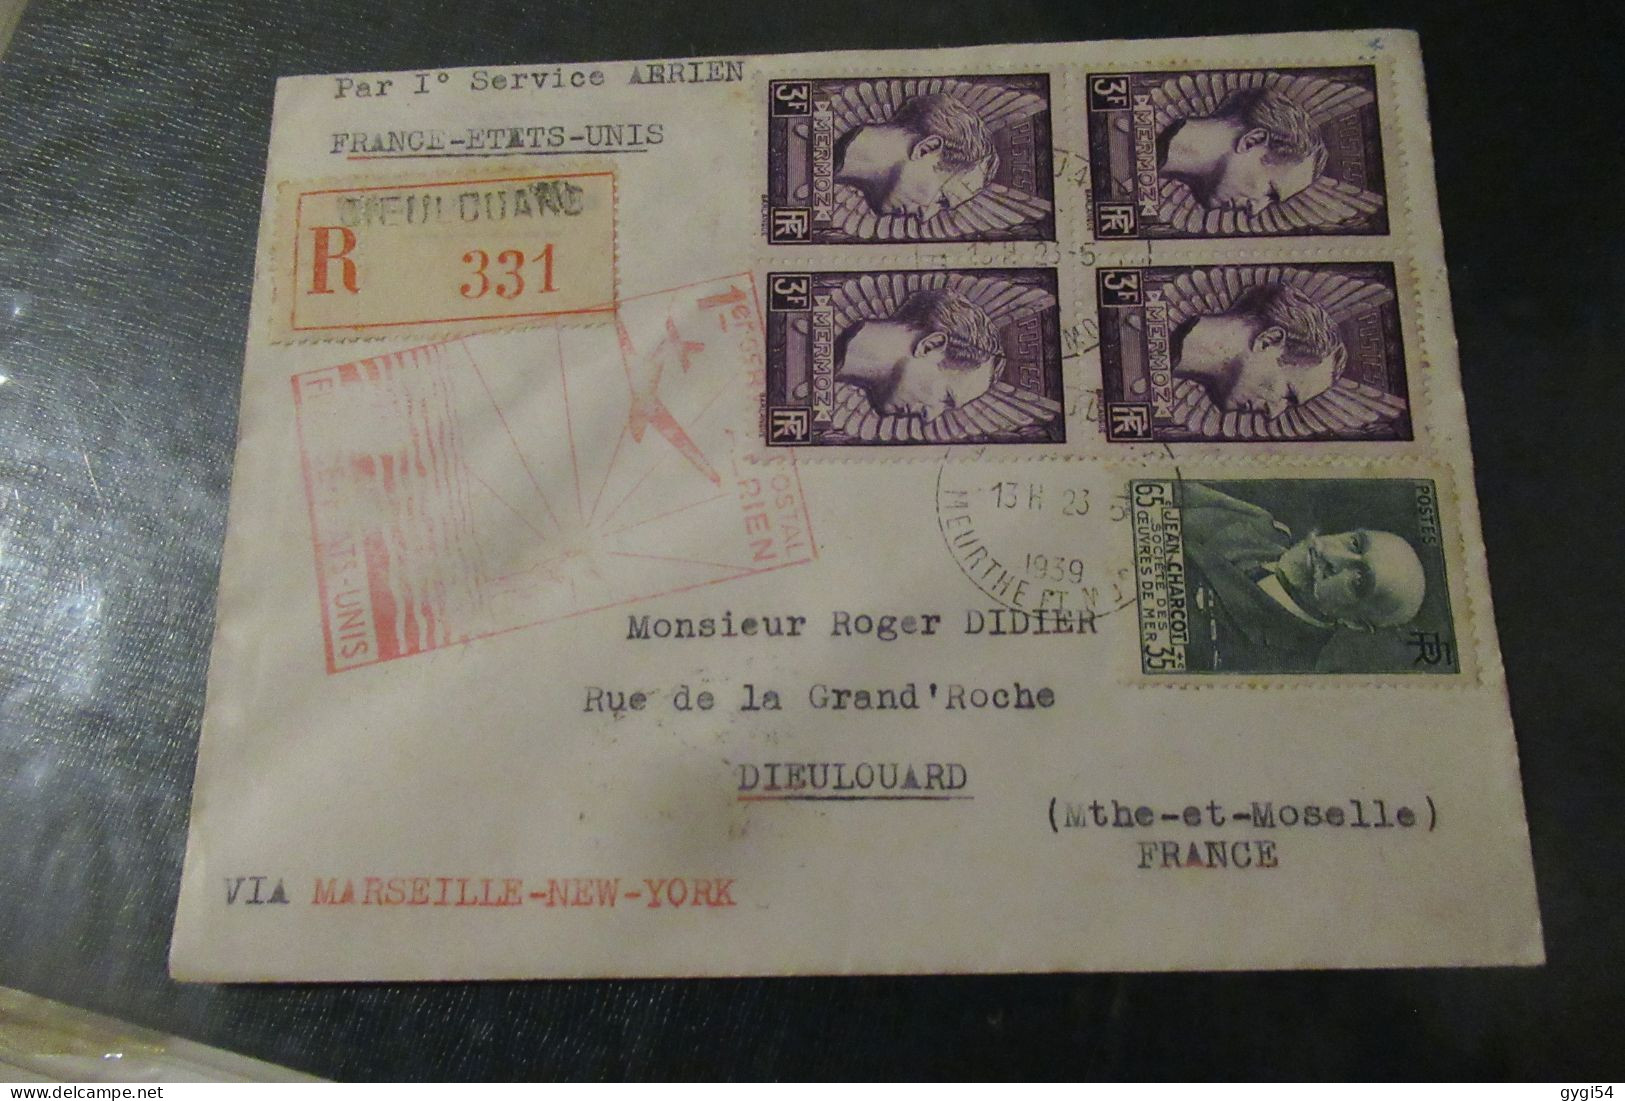 Par Premier Service Aérien France Etats - Unis 1939 Lettre R Dieulouard - Primi Voli